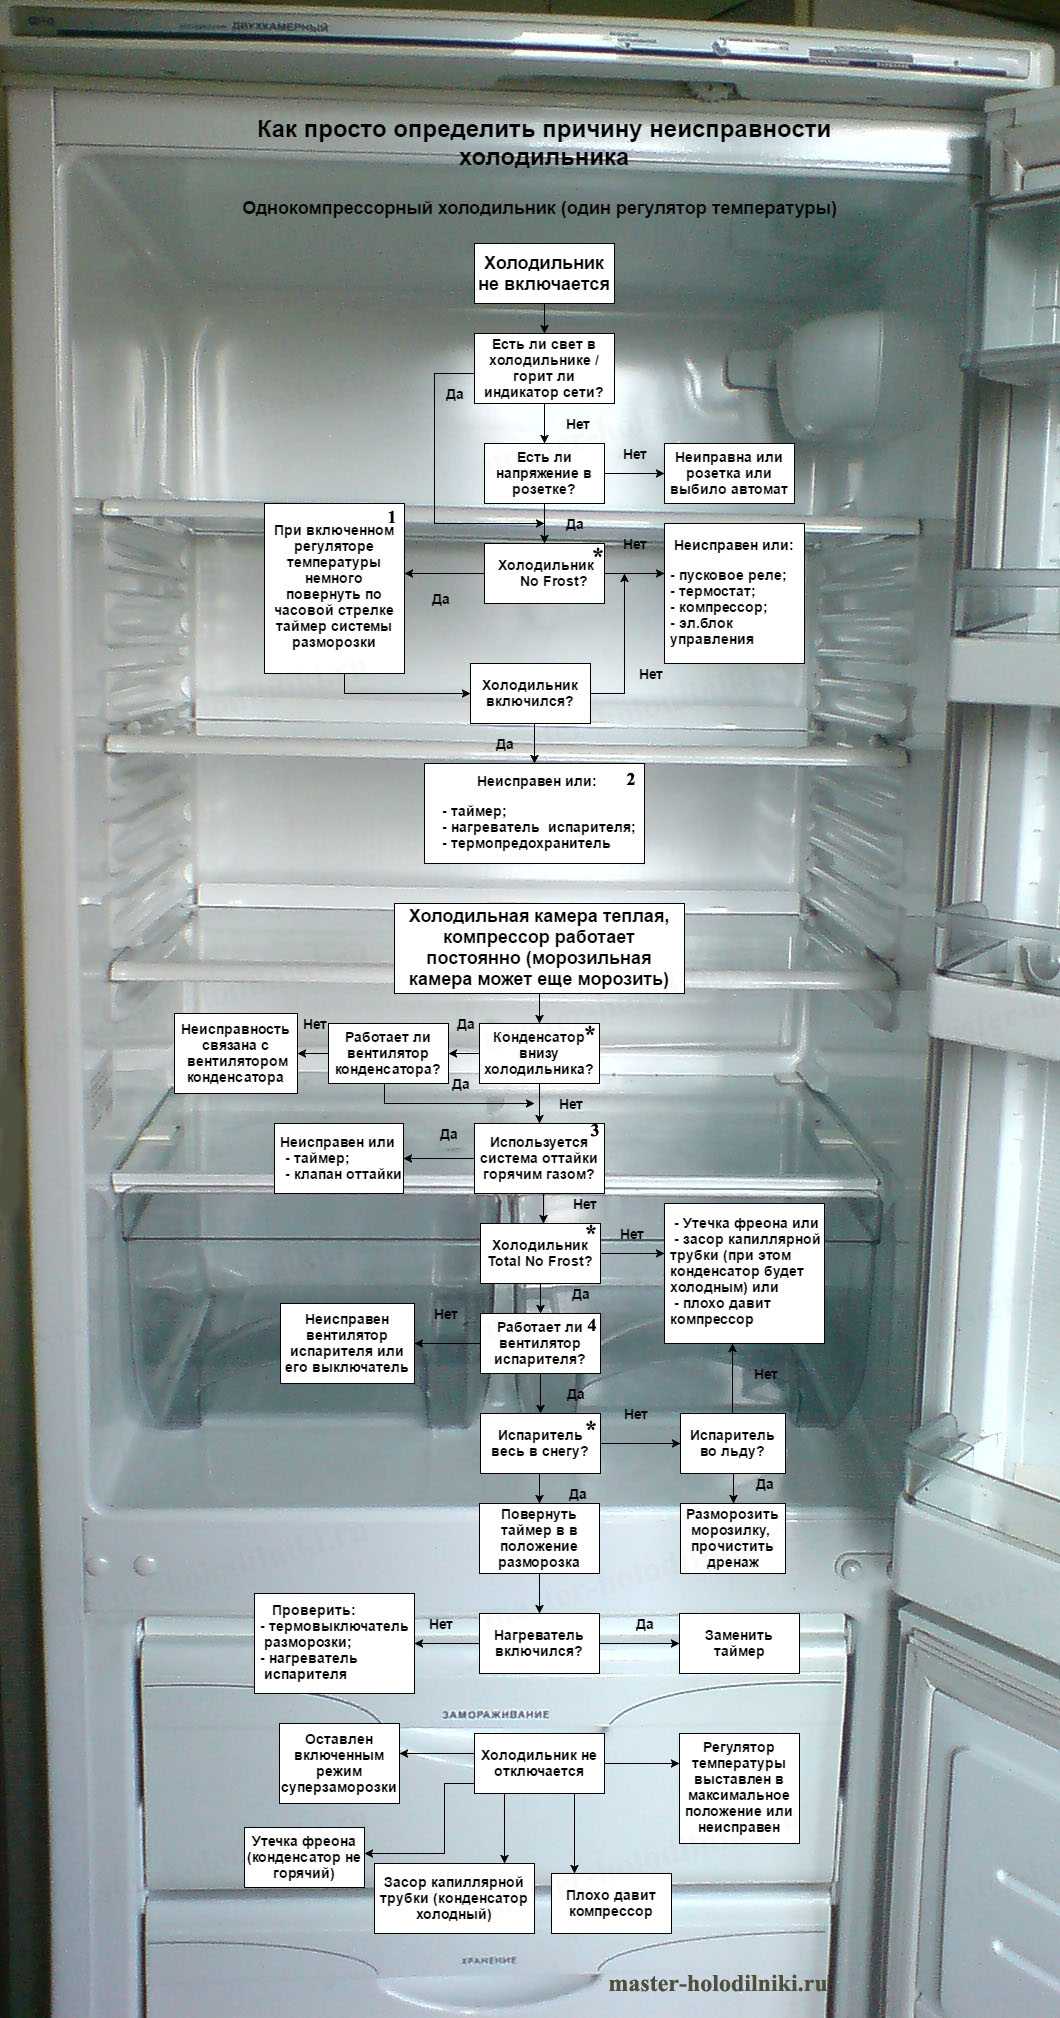 Почему в холодильнике холодильная камера не работает, а морозилка – морозит | cтатьи о холодильниках и морозильниках | холодильник.инфо